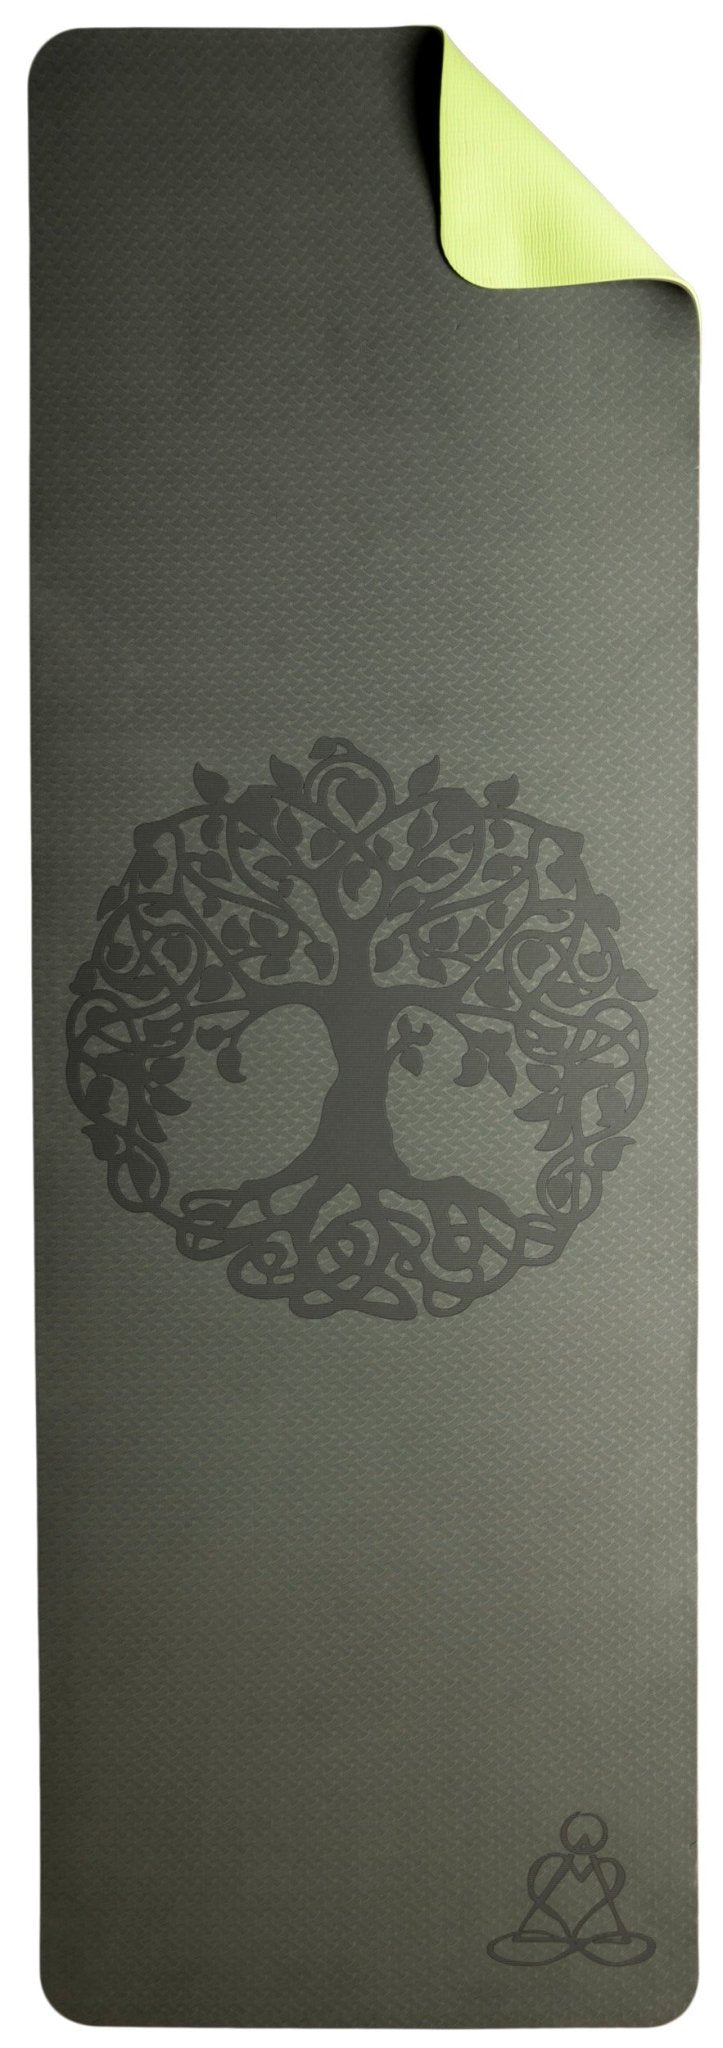 Yogamatte TPE ecofriendly - dunkelgrün/ hellgrün mit Baum des Lebens - Ritualmanufaktur.de